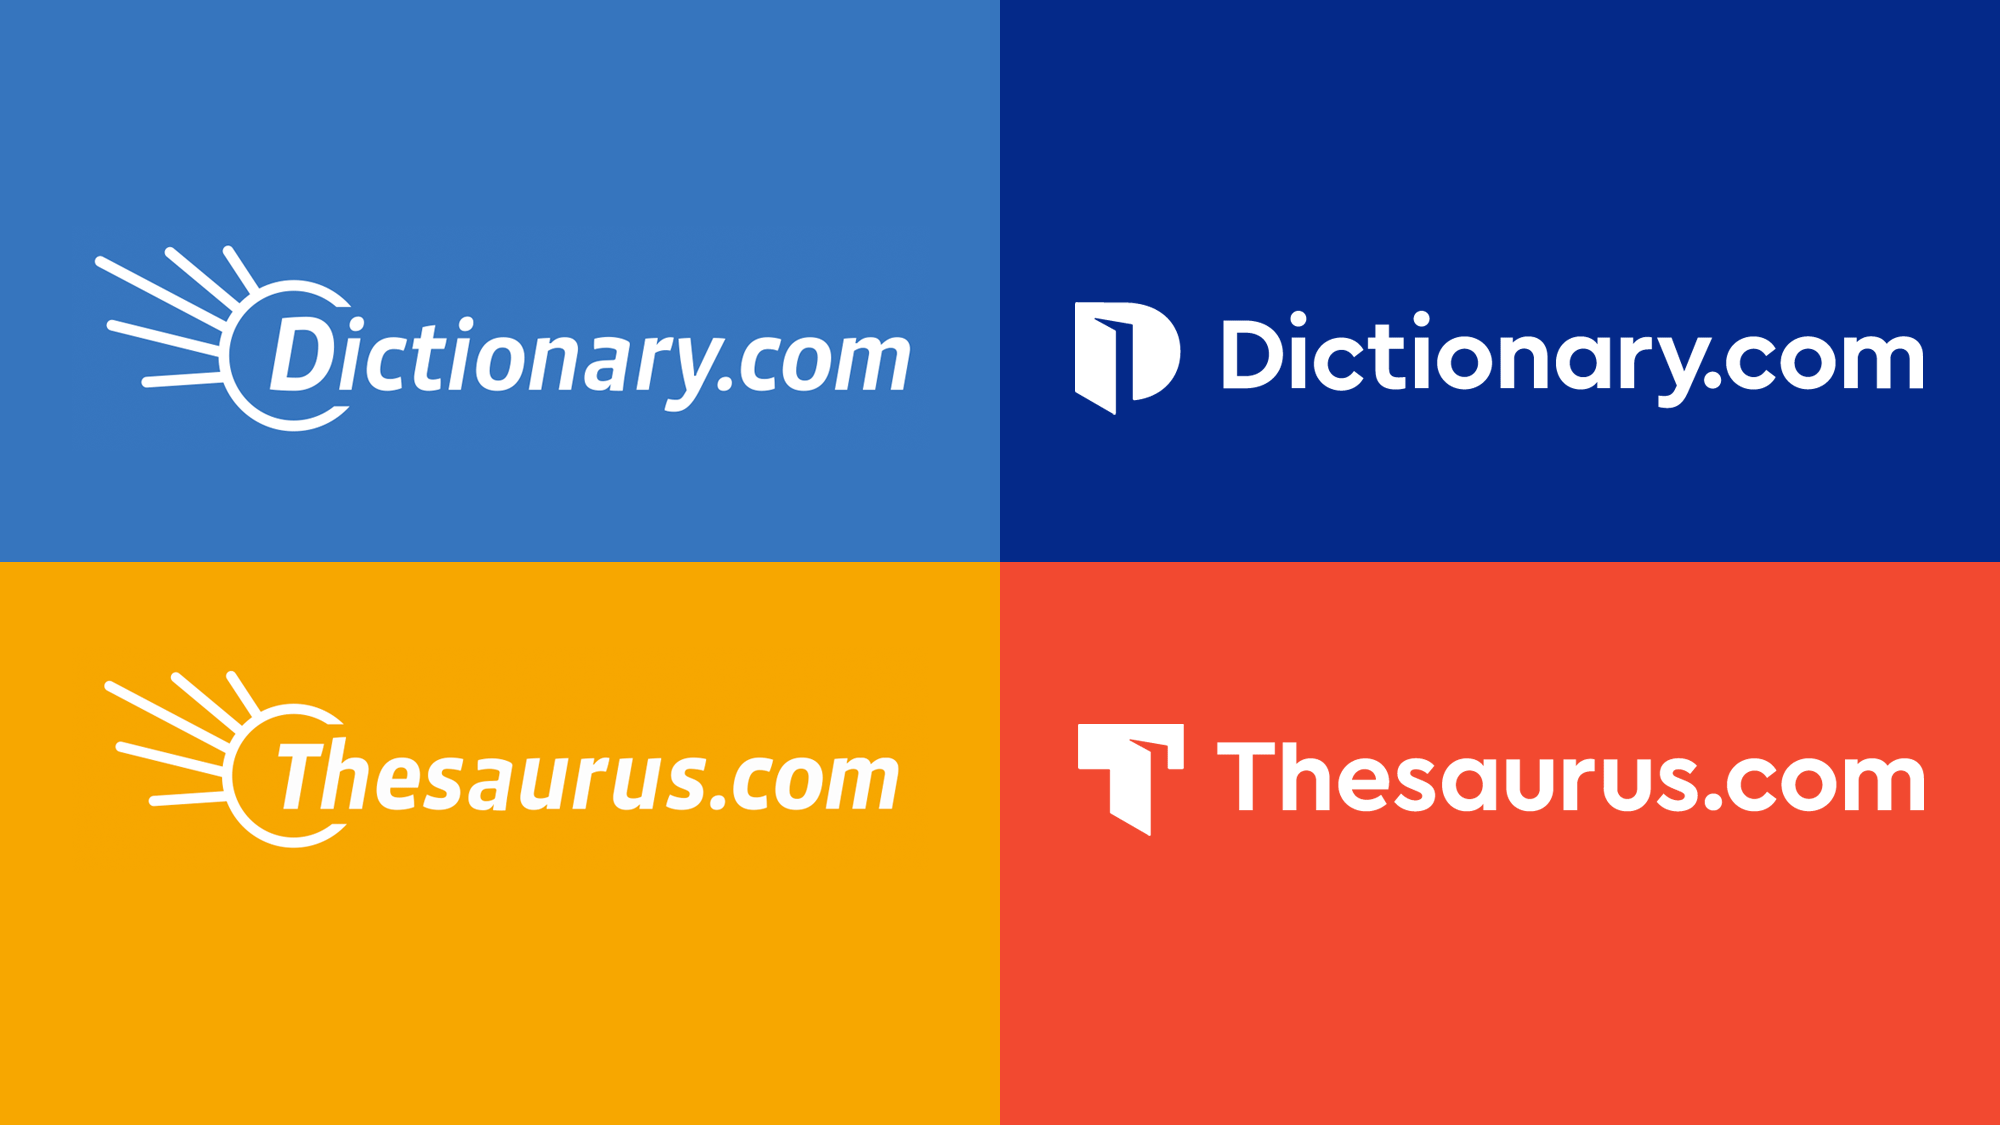 Brand New: New Logos for Dictionary.com and Thesaurus.com